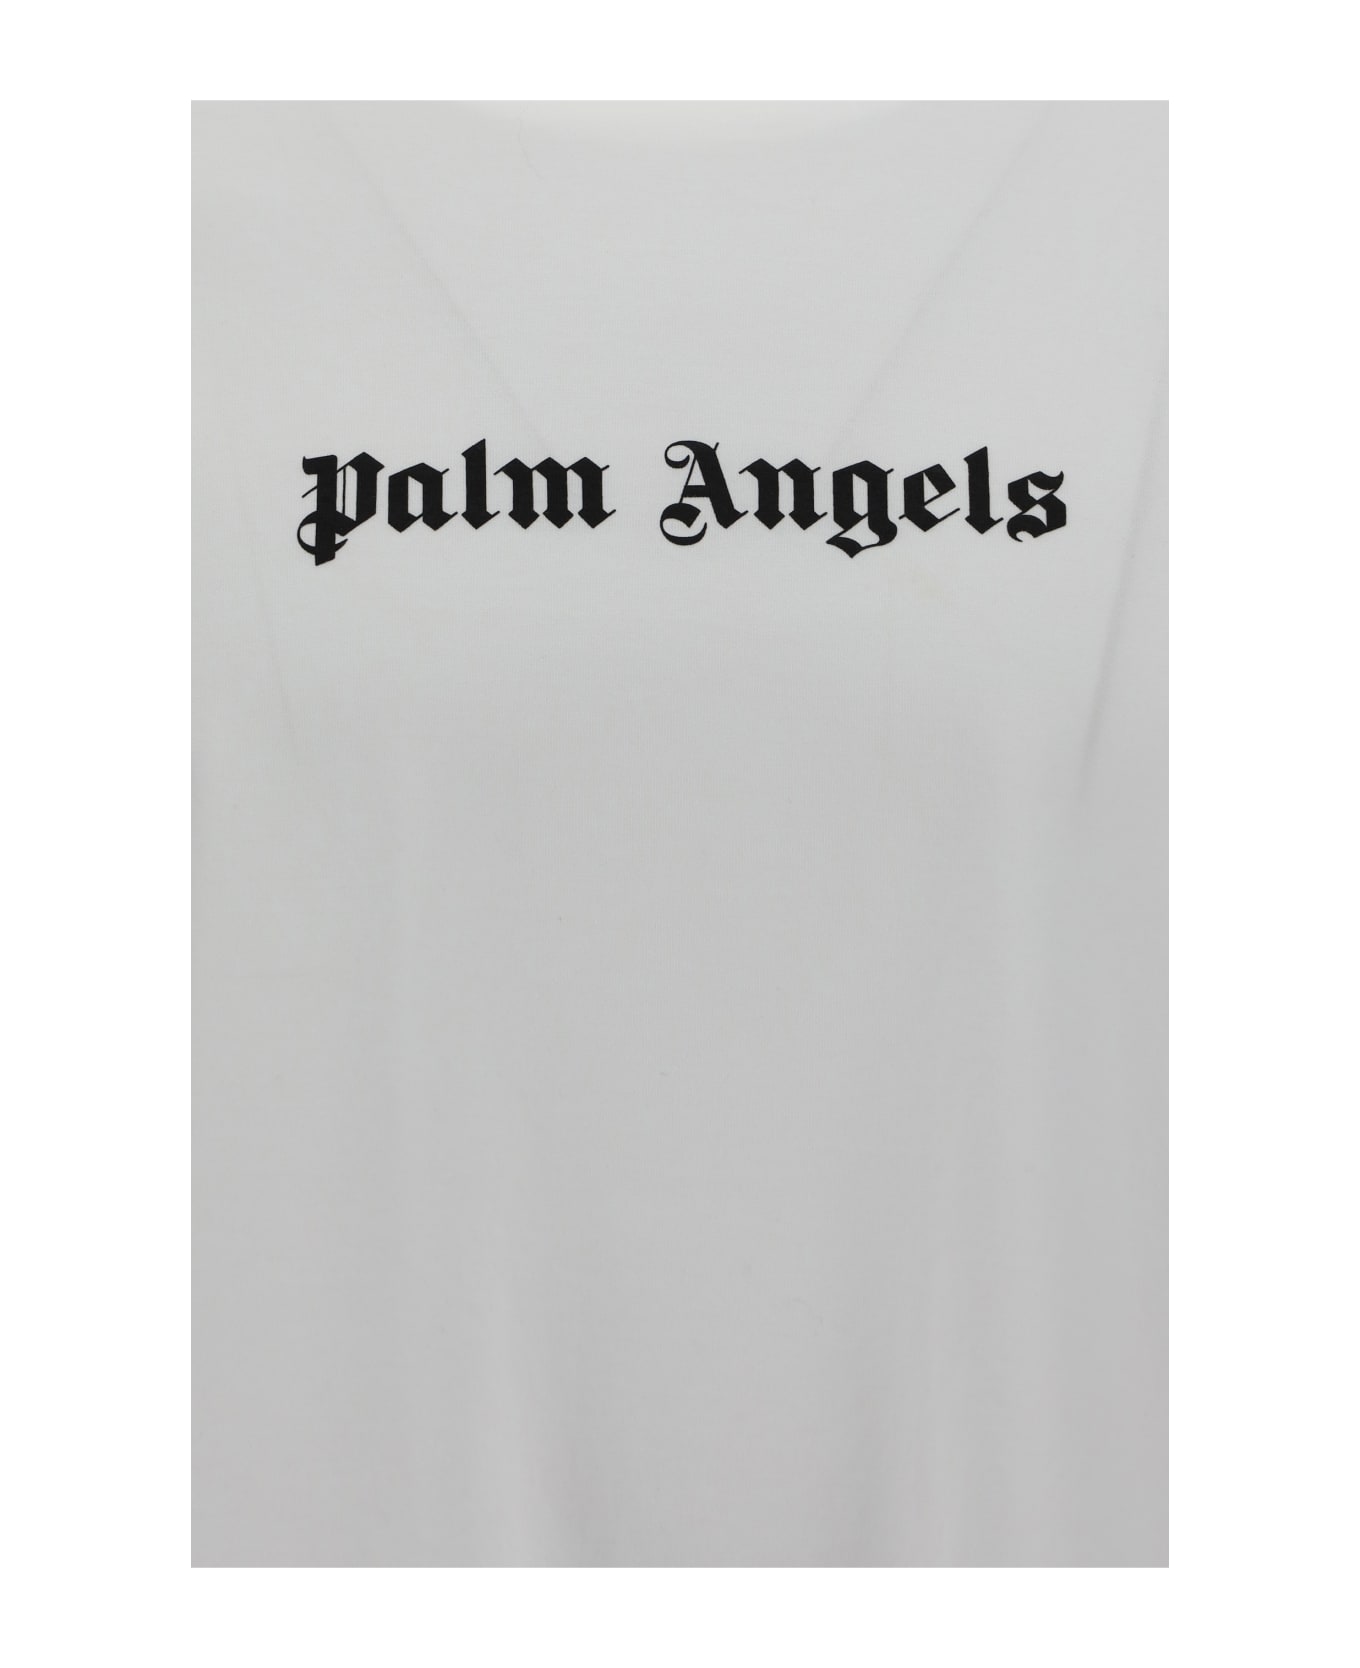 Palm Angels T-shirt - Bianco